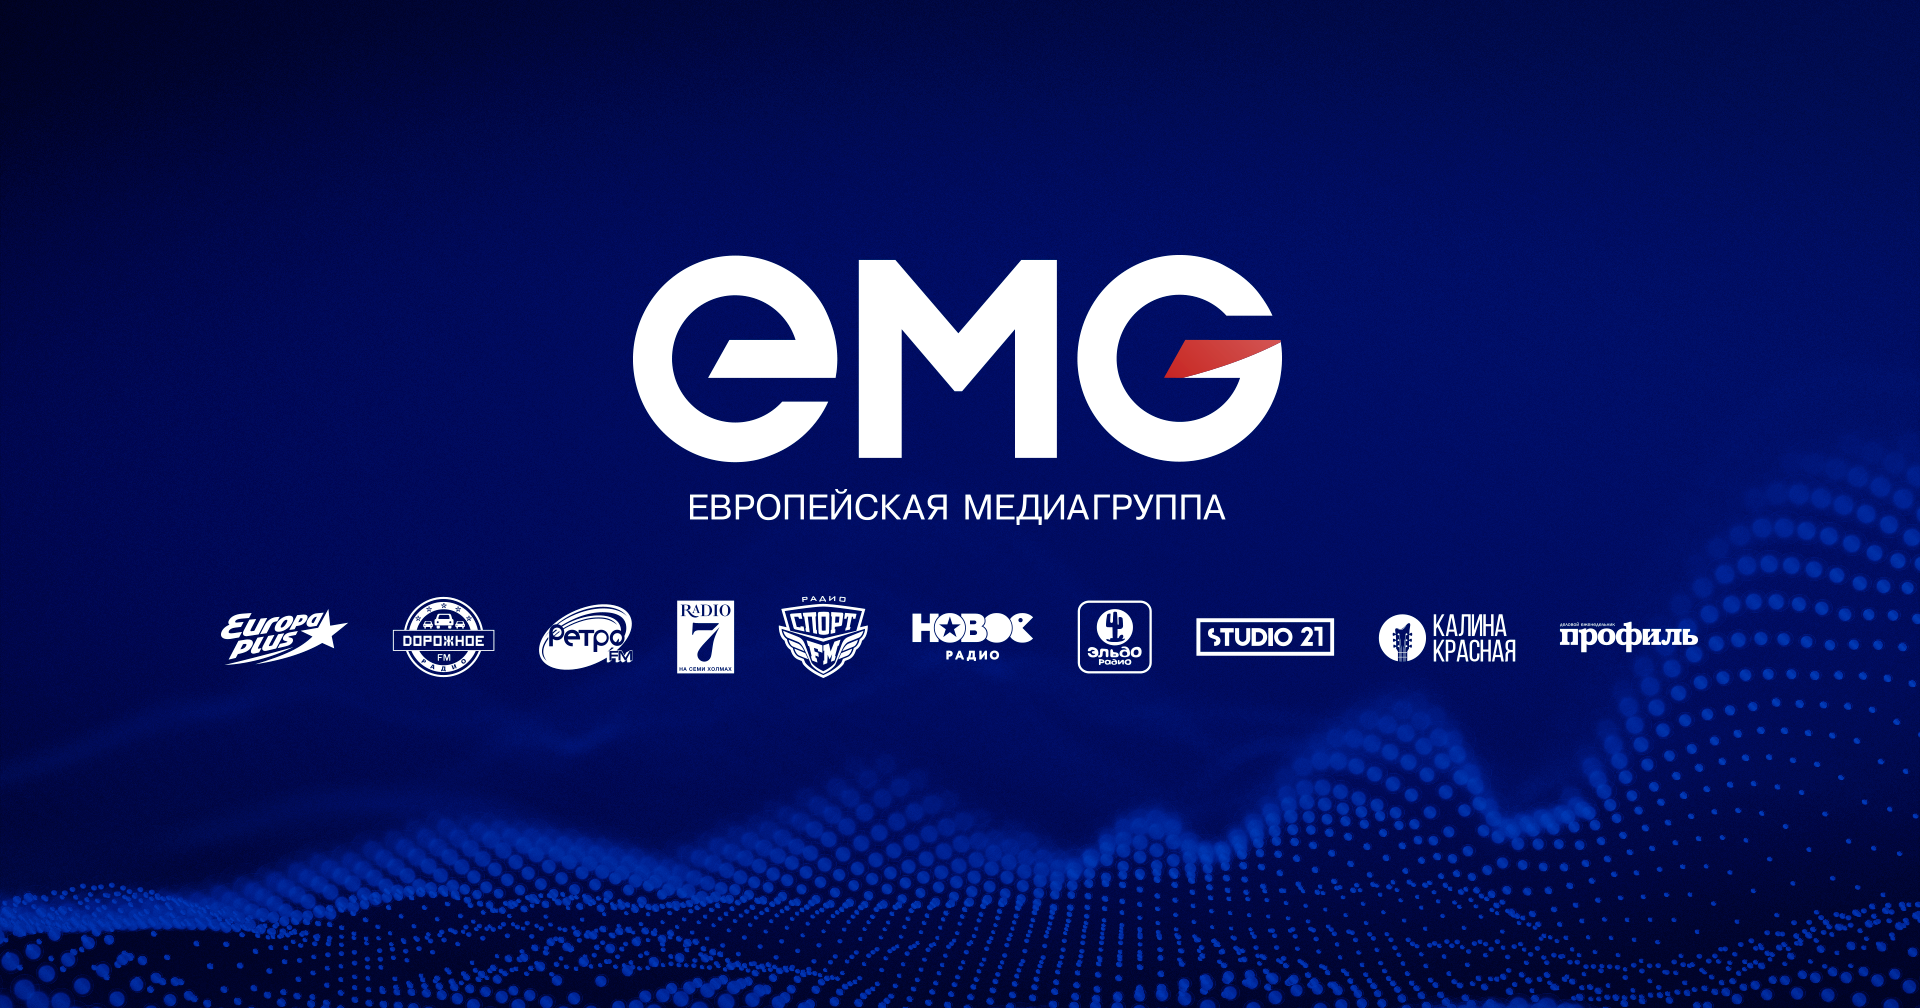 Медиа группа вк. Европейская Медиа группа радиостанции. Европейская Медиа группа логотип. ЕМГ логотип. Русская Медиа группа логотип.